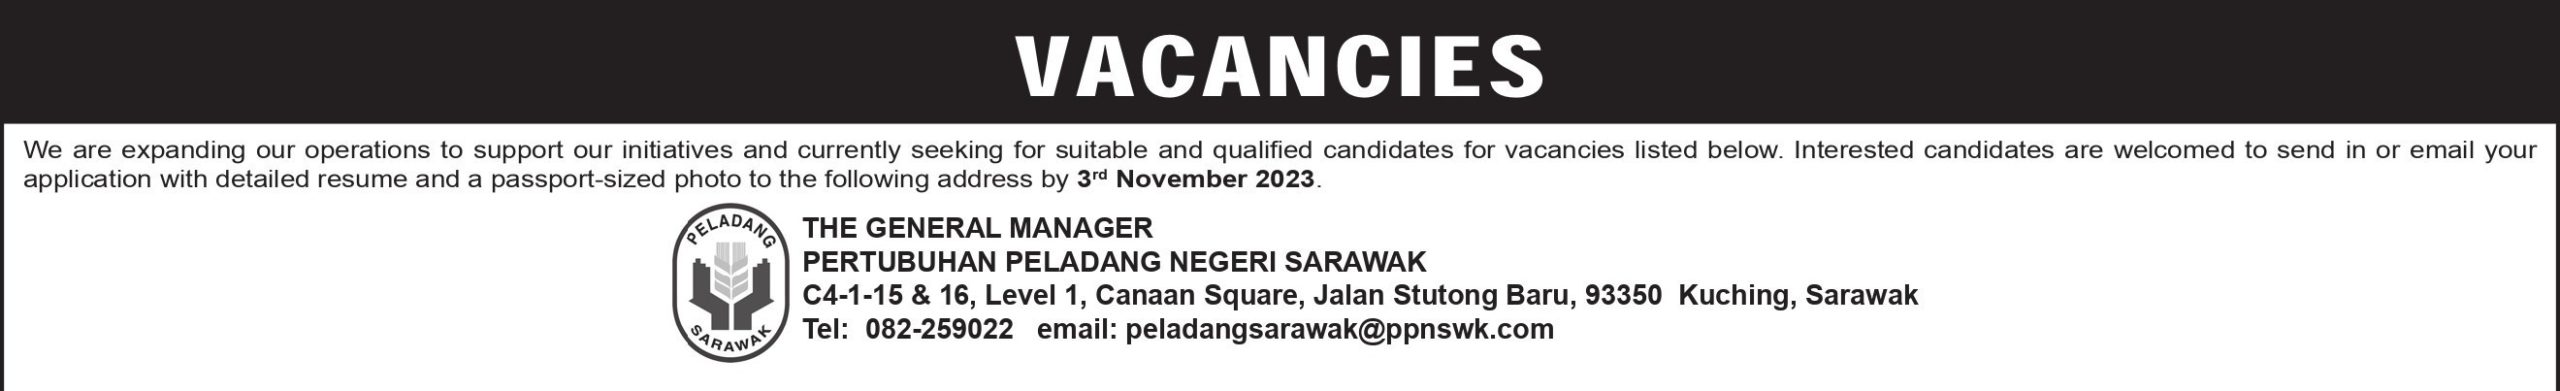 PPNS: Vacancies